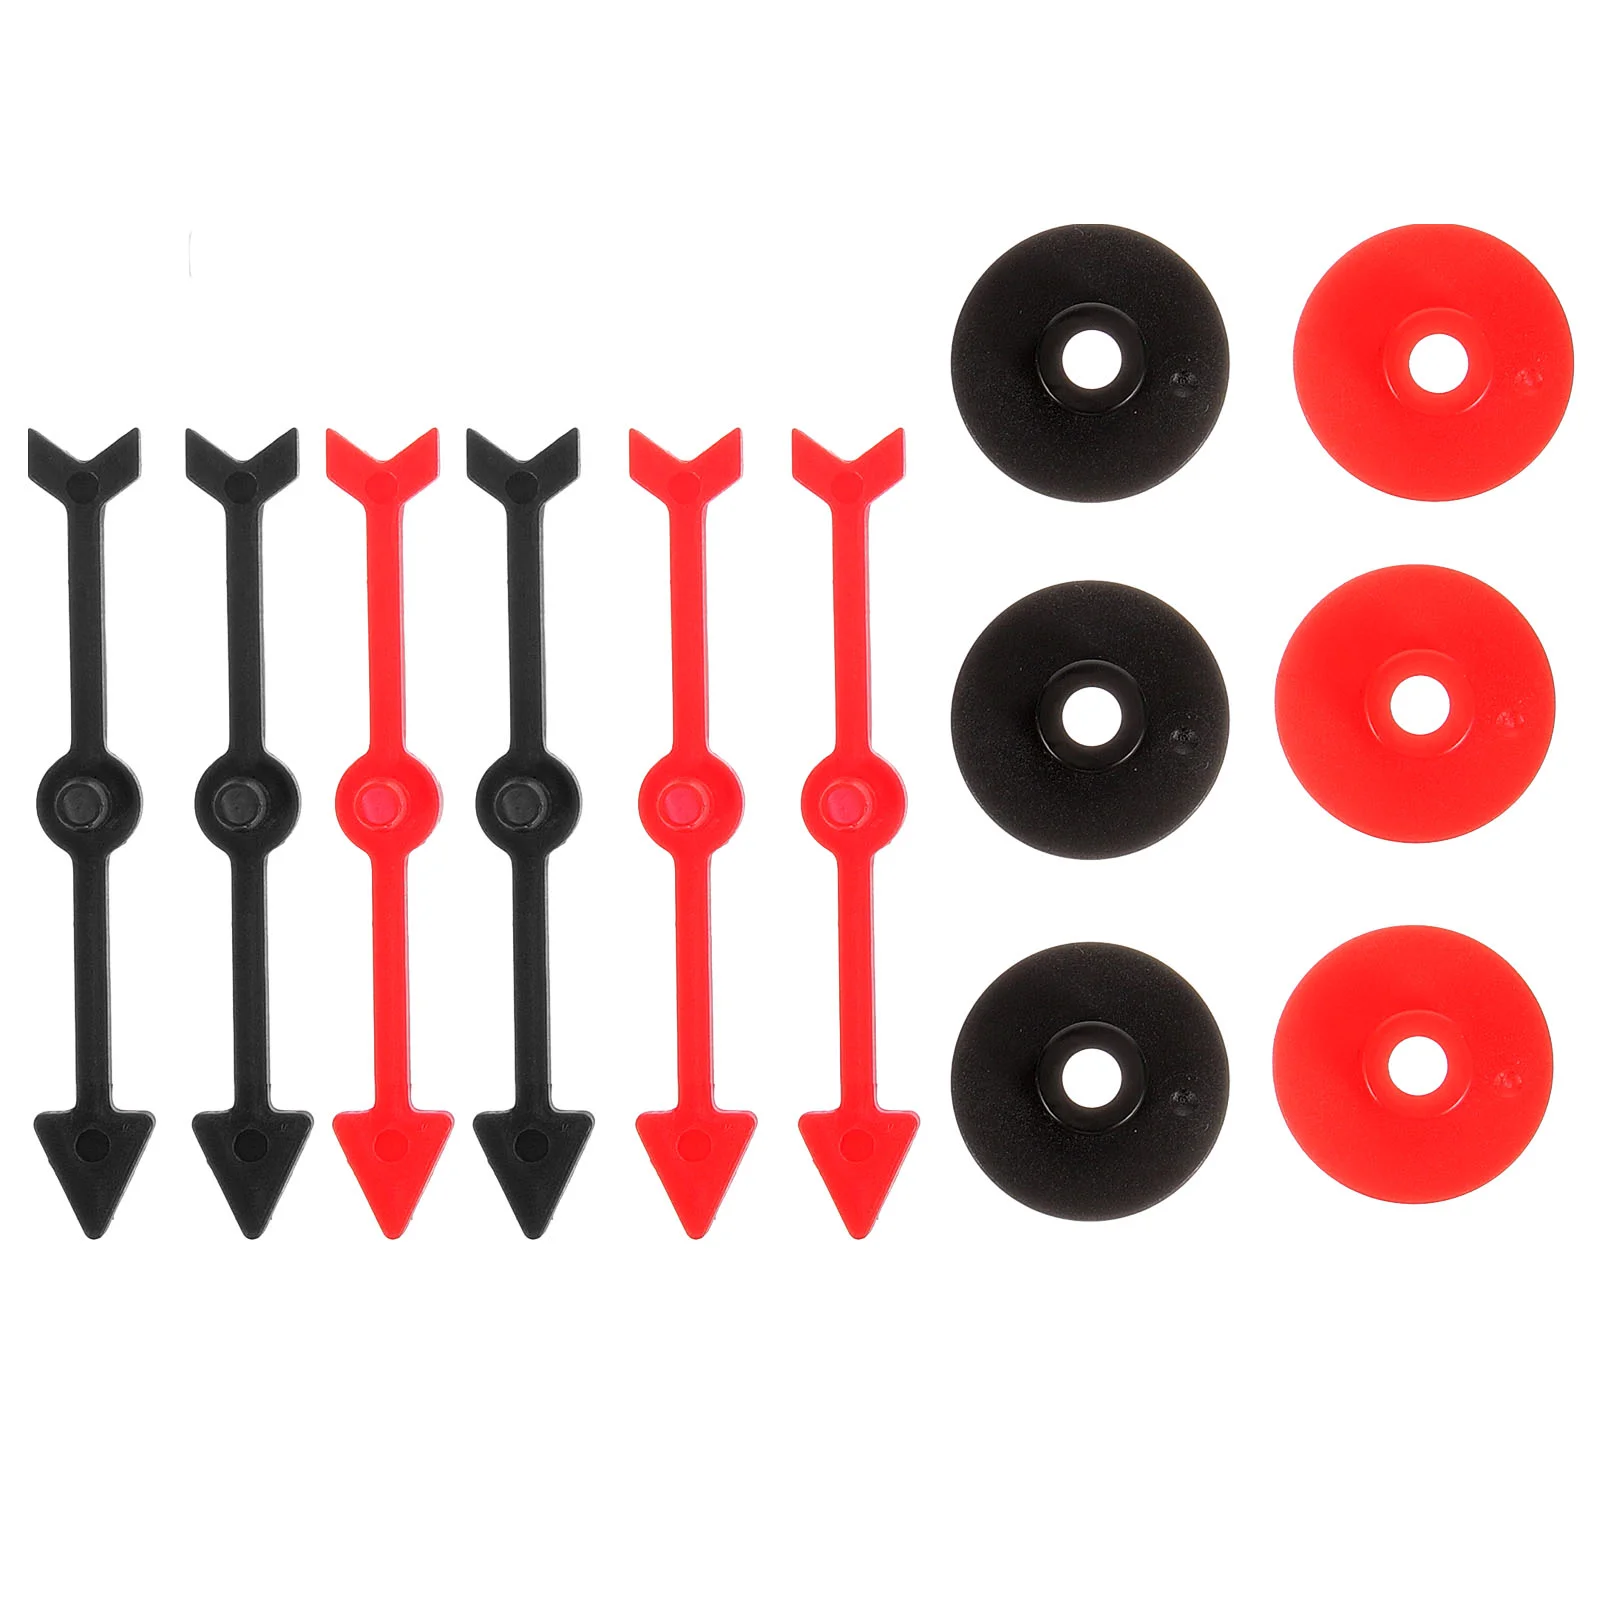 6 adet Masa Oyunu Pointer Aksesuarları Plastik Oyun Okları Spinners Oyun Okları